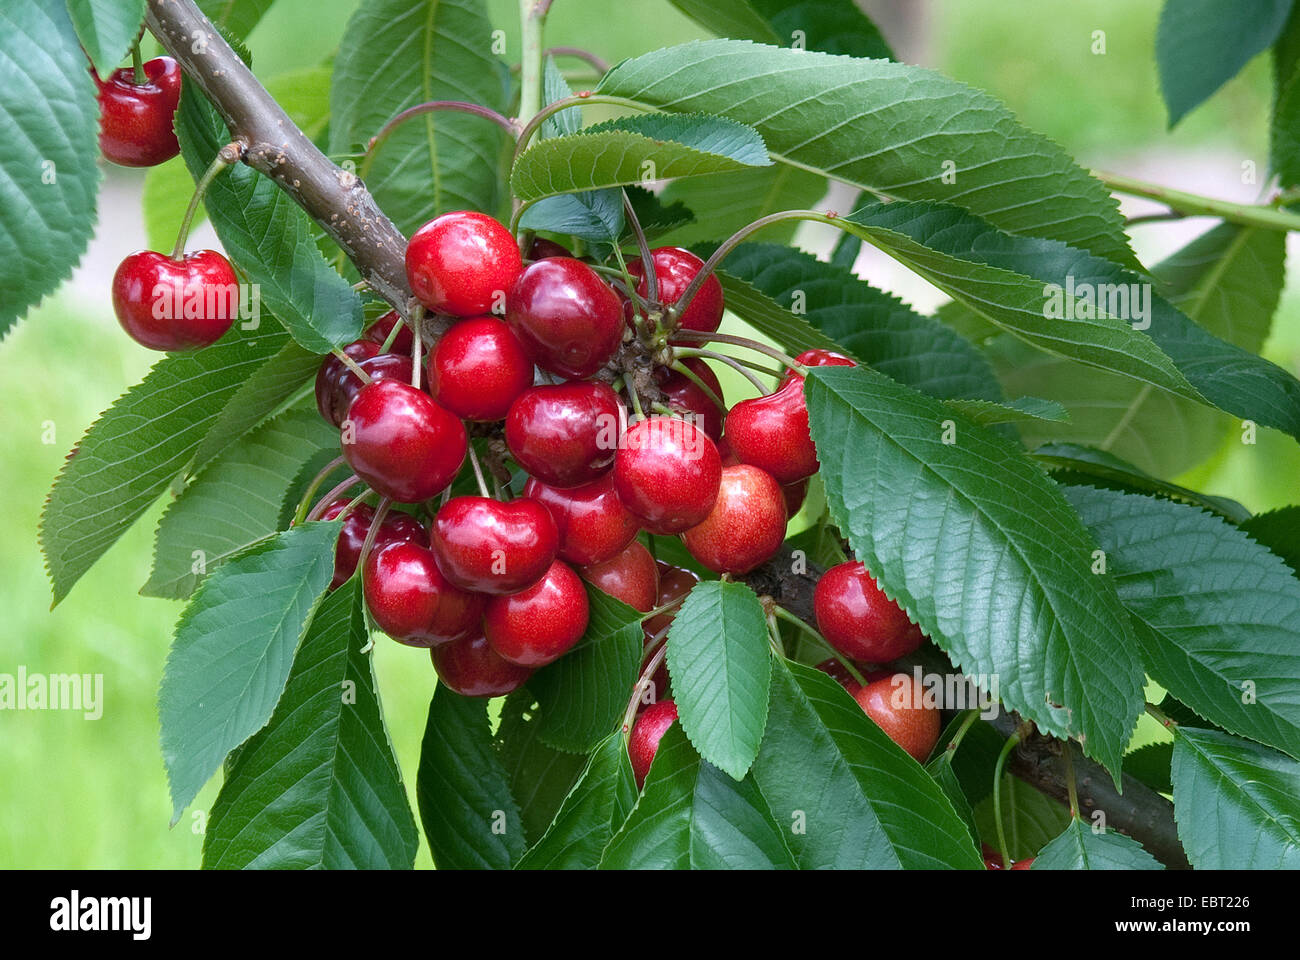 Cherry tree, Sweet cherry (Prunus avium ''Skeena'', Prunus avium Skeena), cultivar Skeena, cherries on a tree Stock Photo